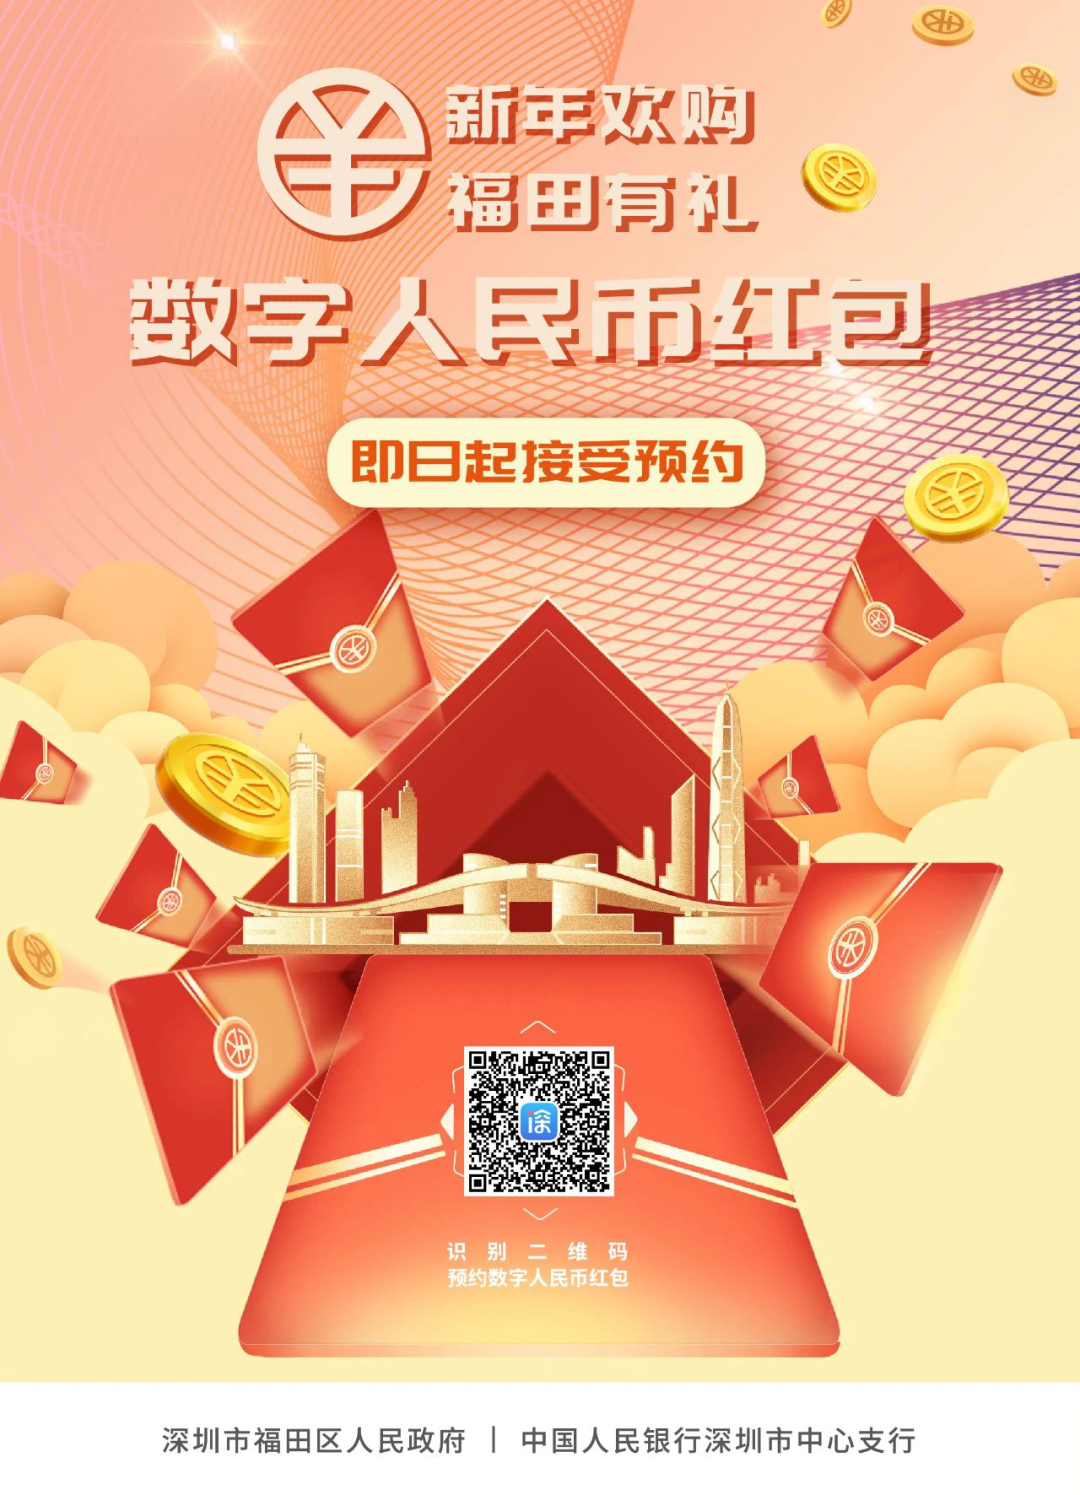 新年第一签：2000万数字人民币红包来了 在深圳个人均可预约抽签,外汇交易平台